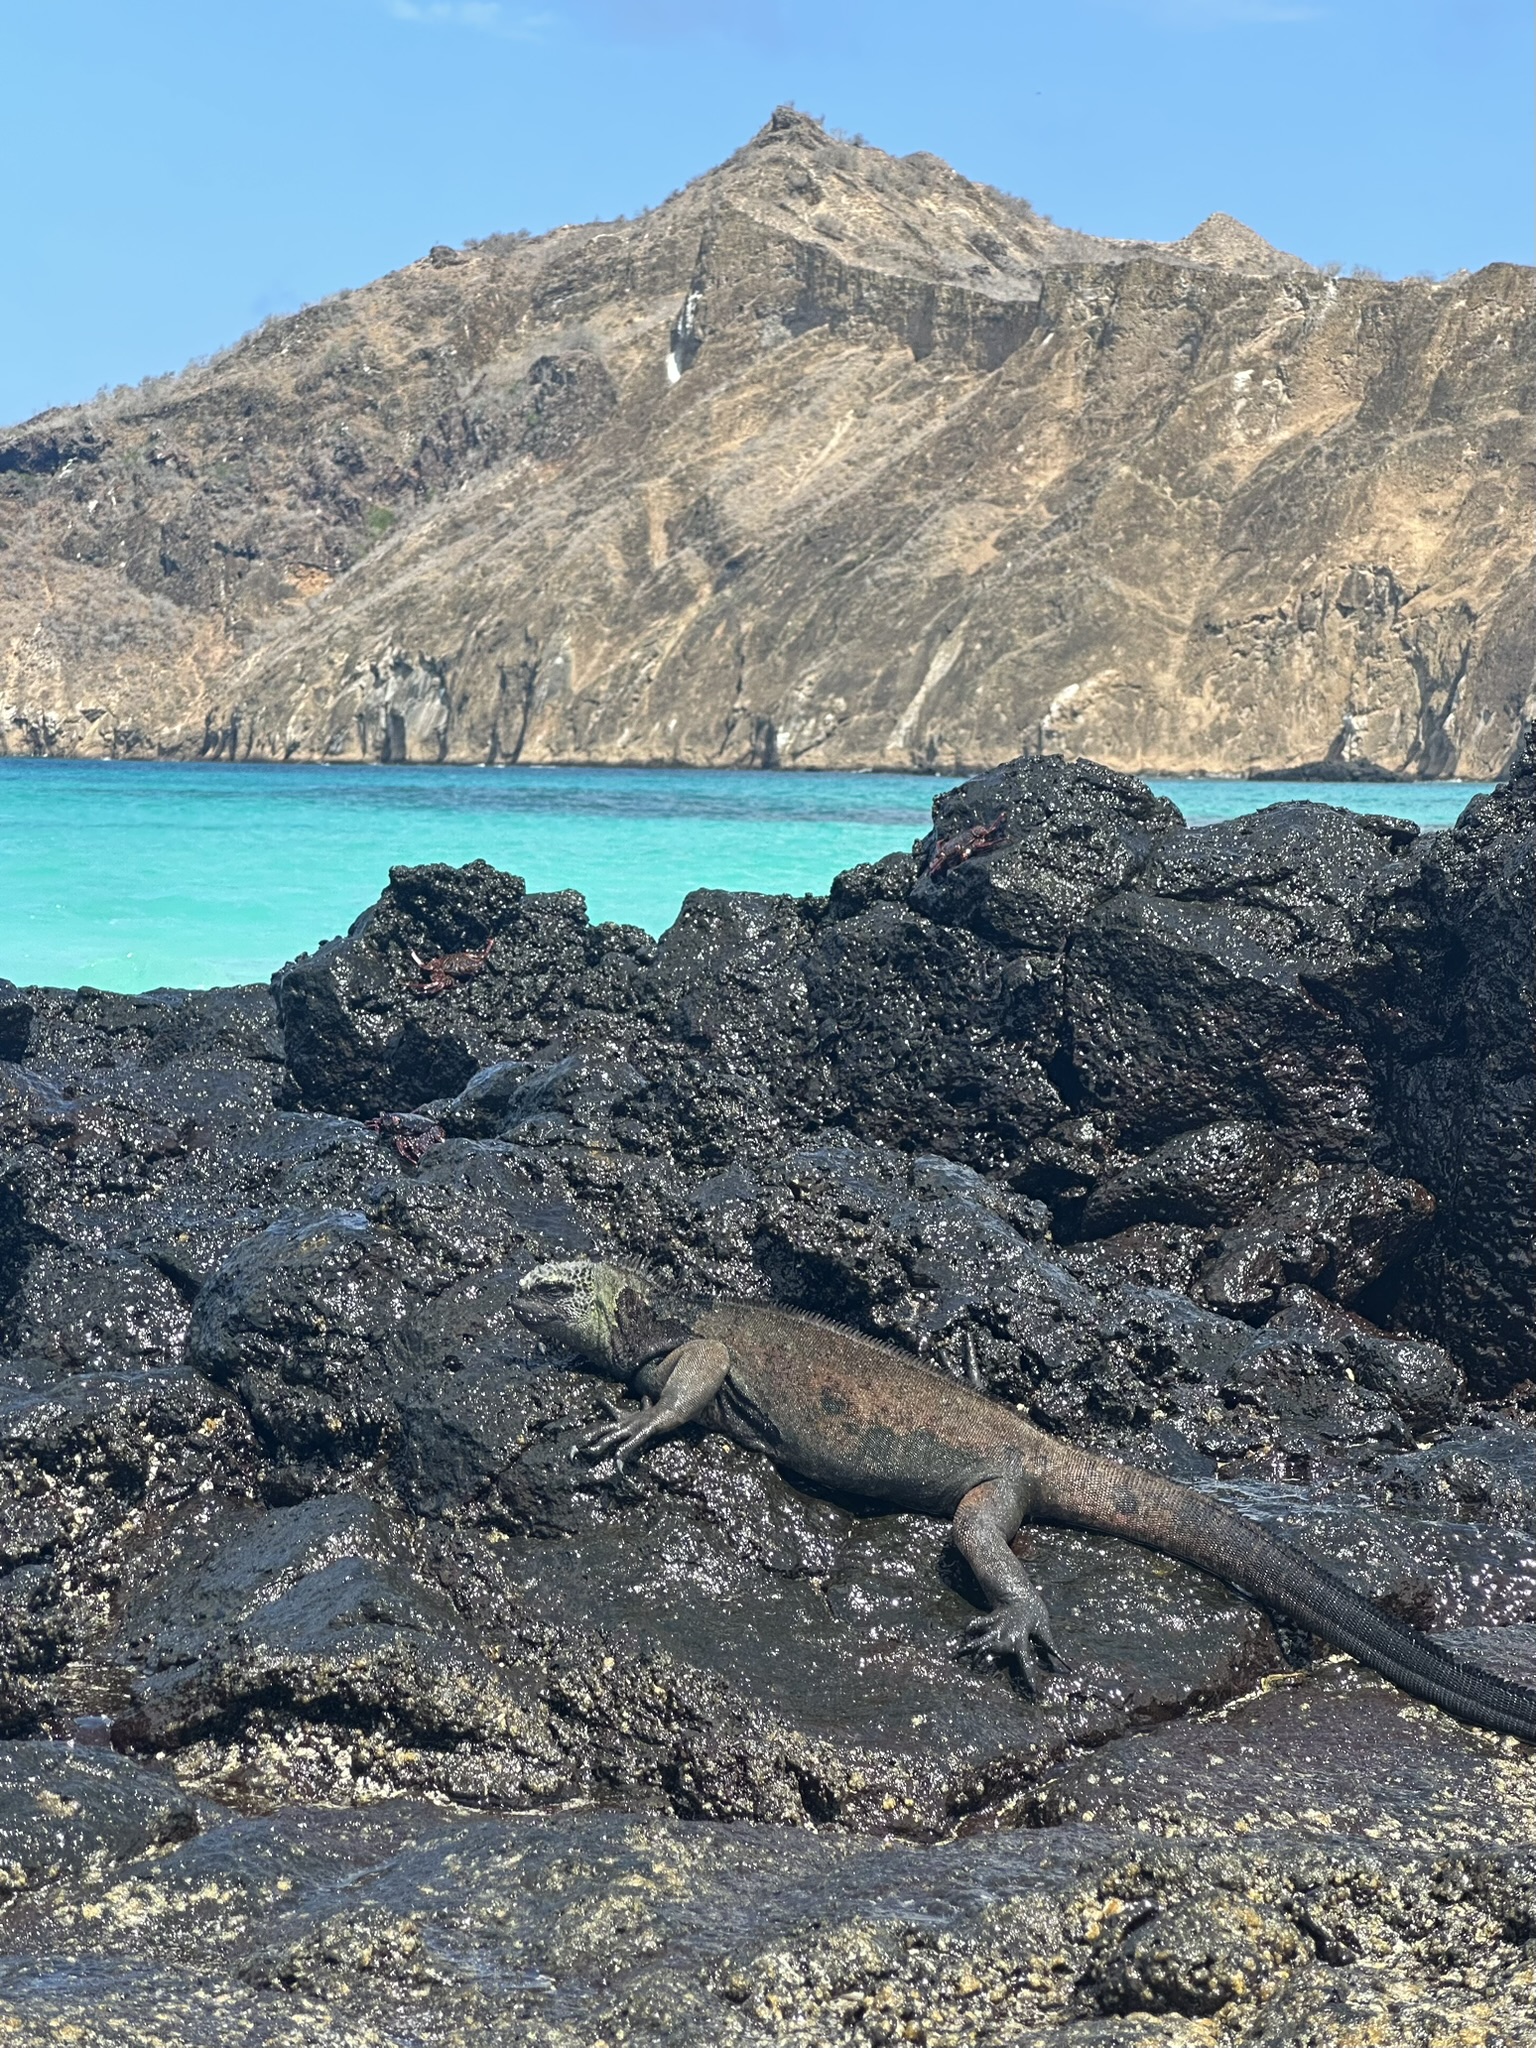 marine iguana on lava rocks